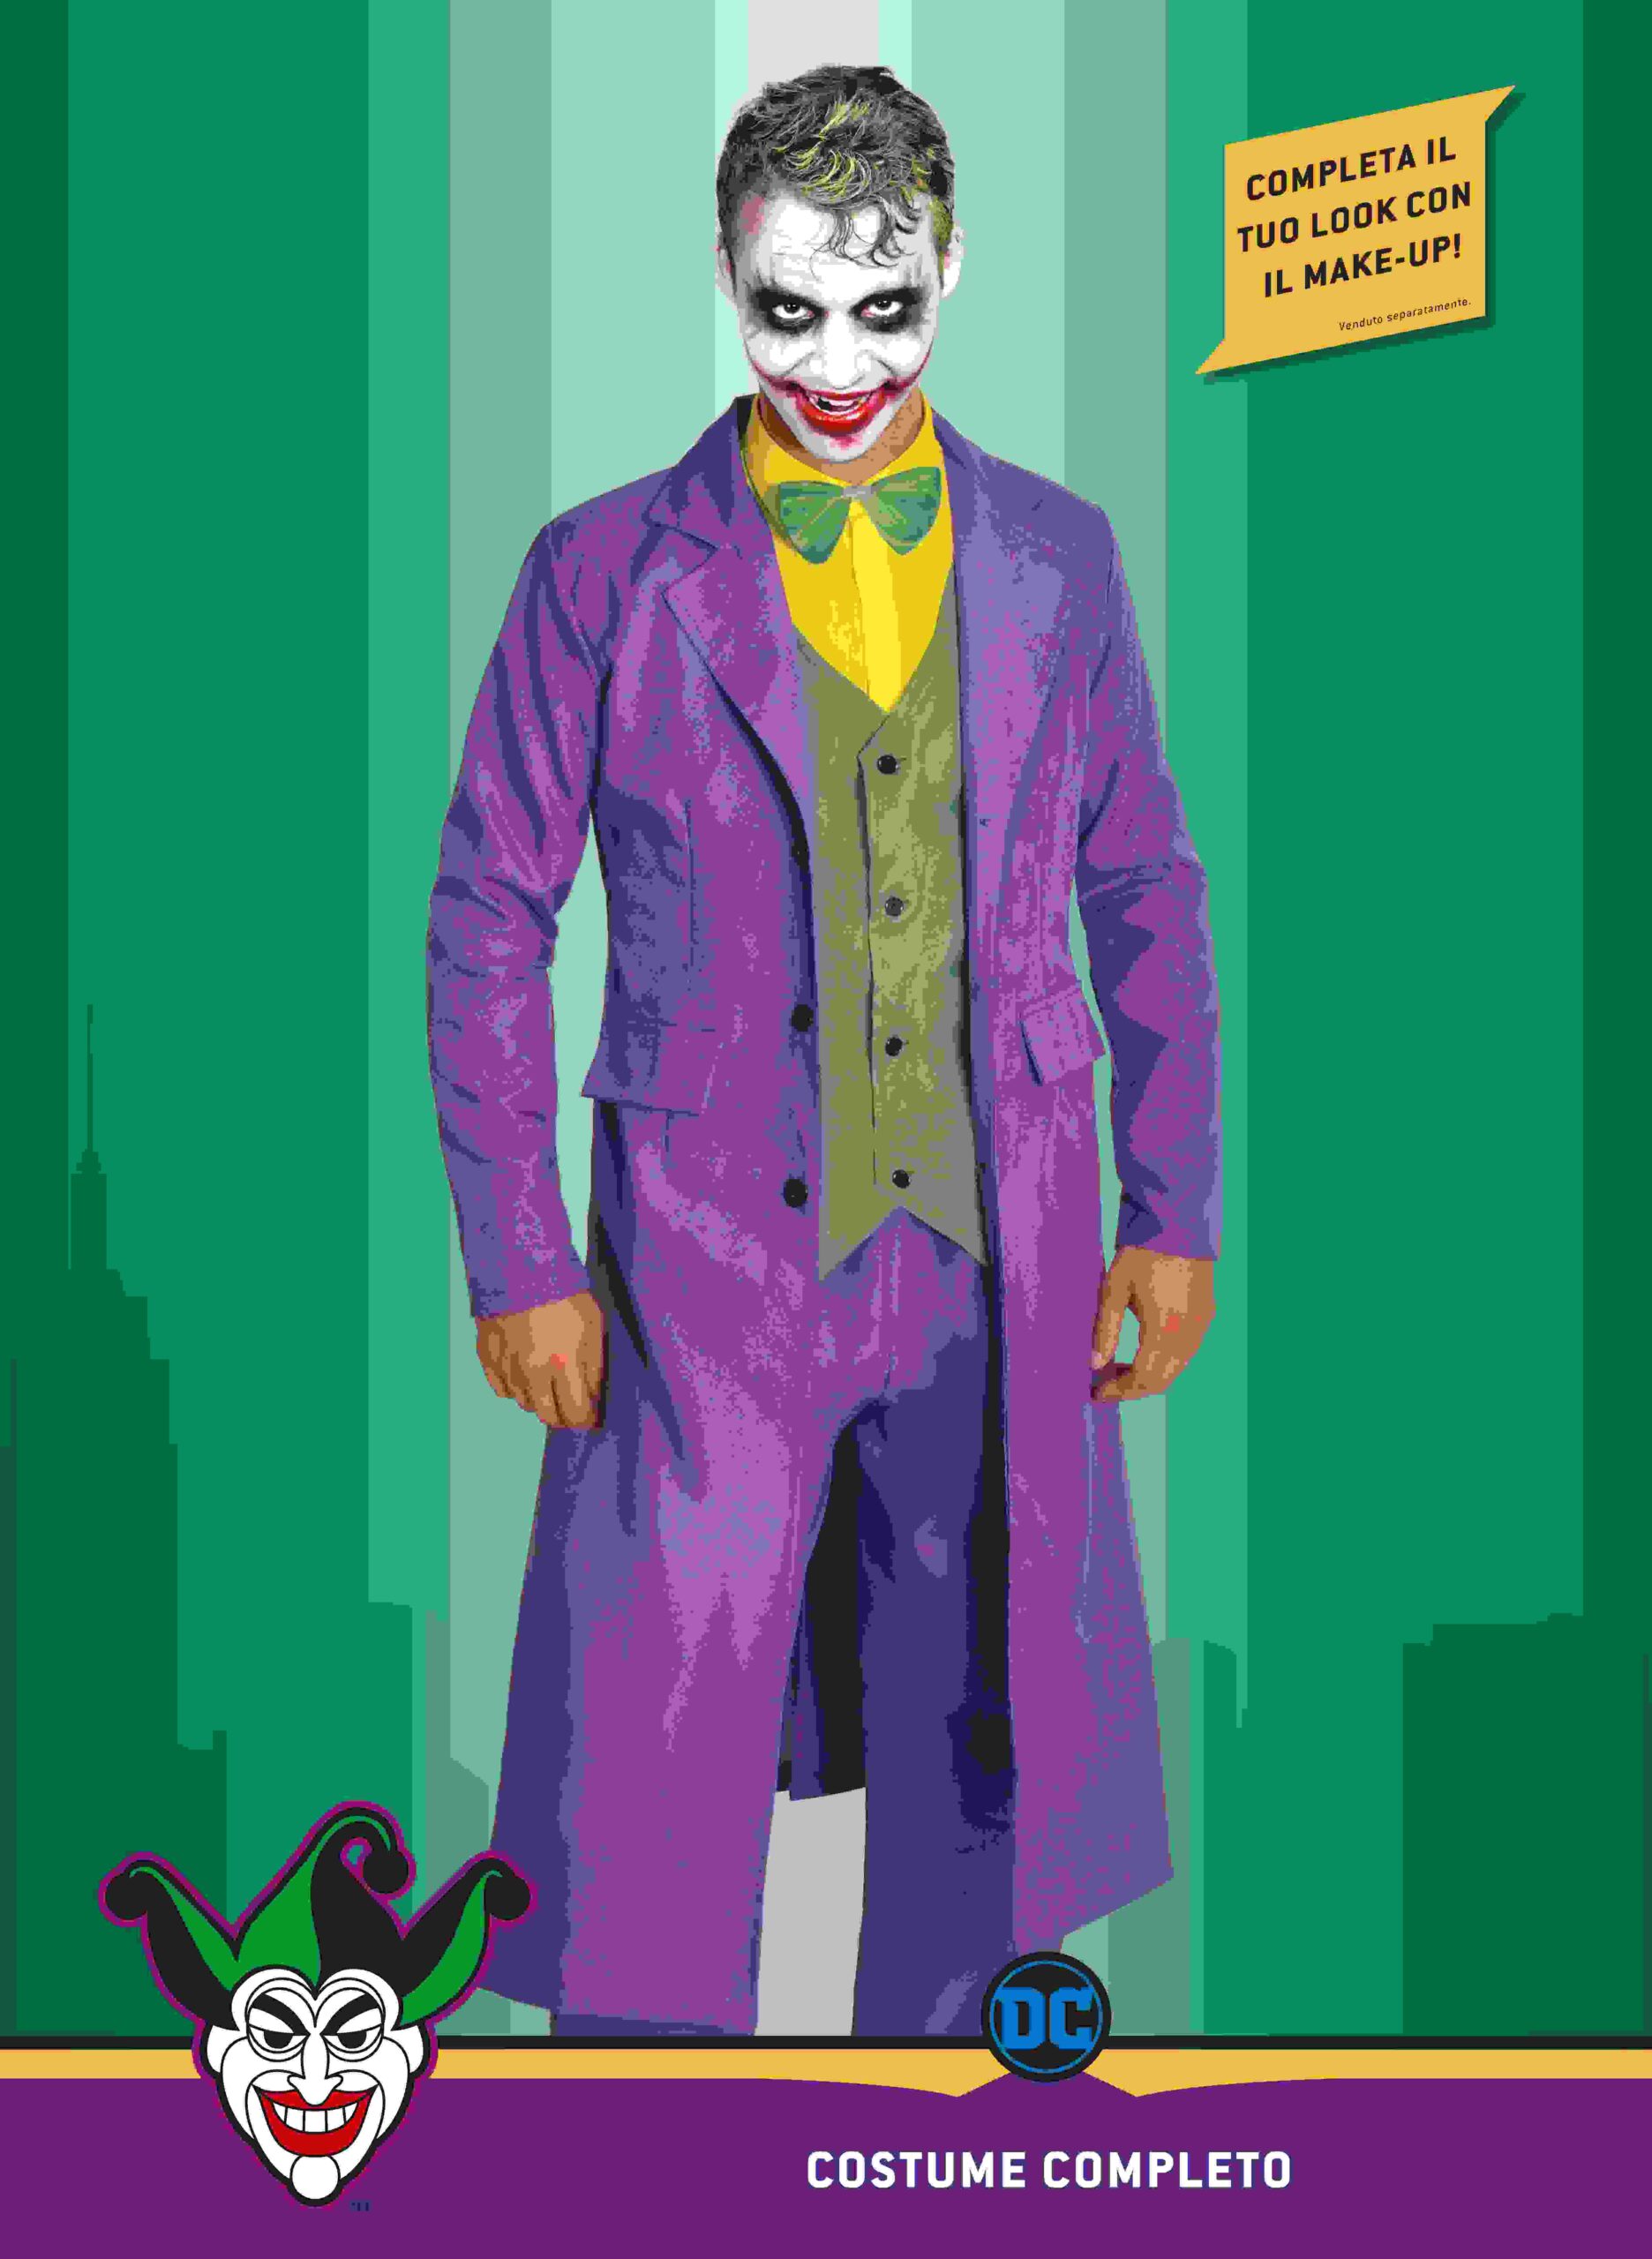 Costume Joker Bambino 5-12 Anni offerta di Toys Center